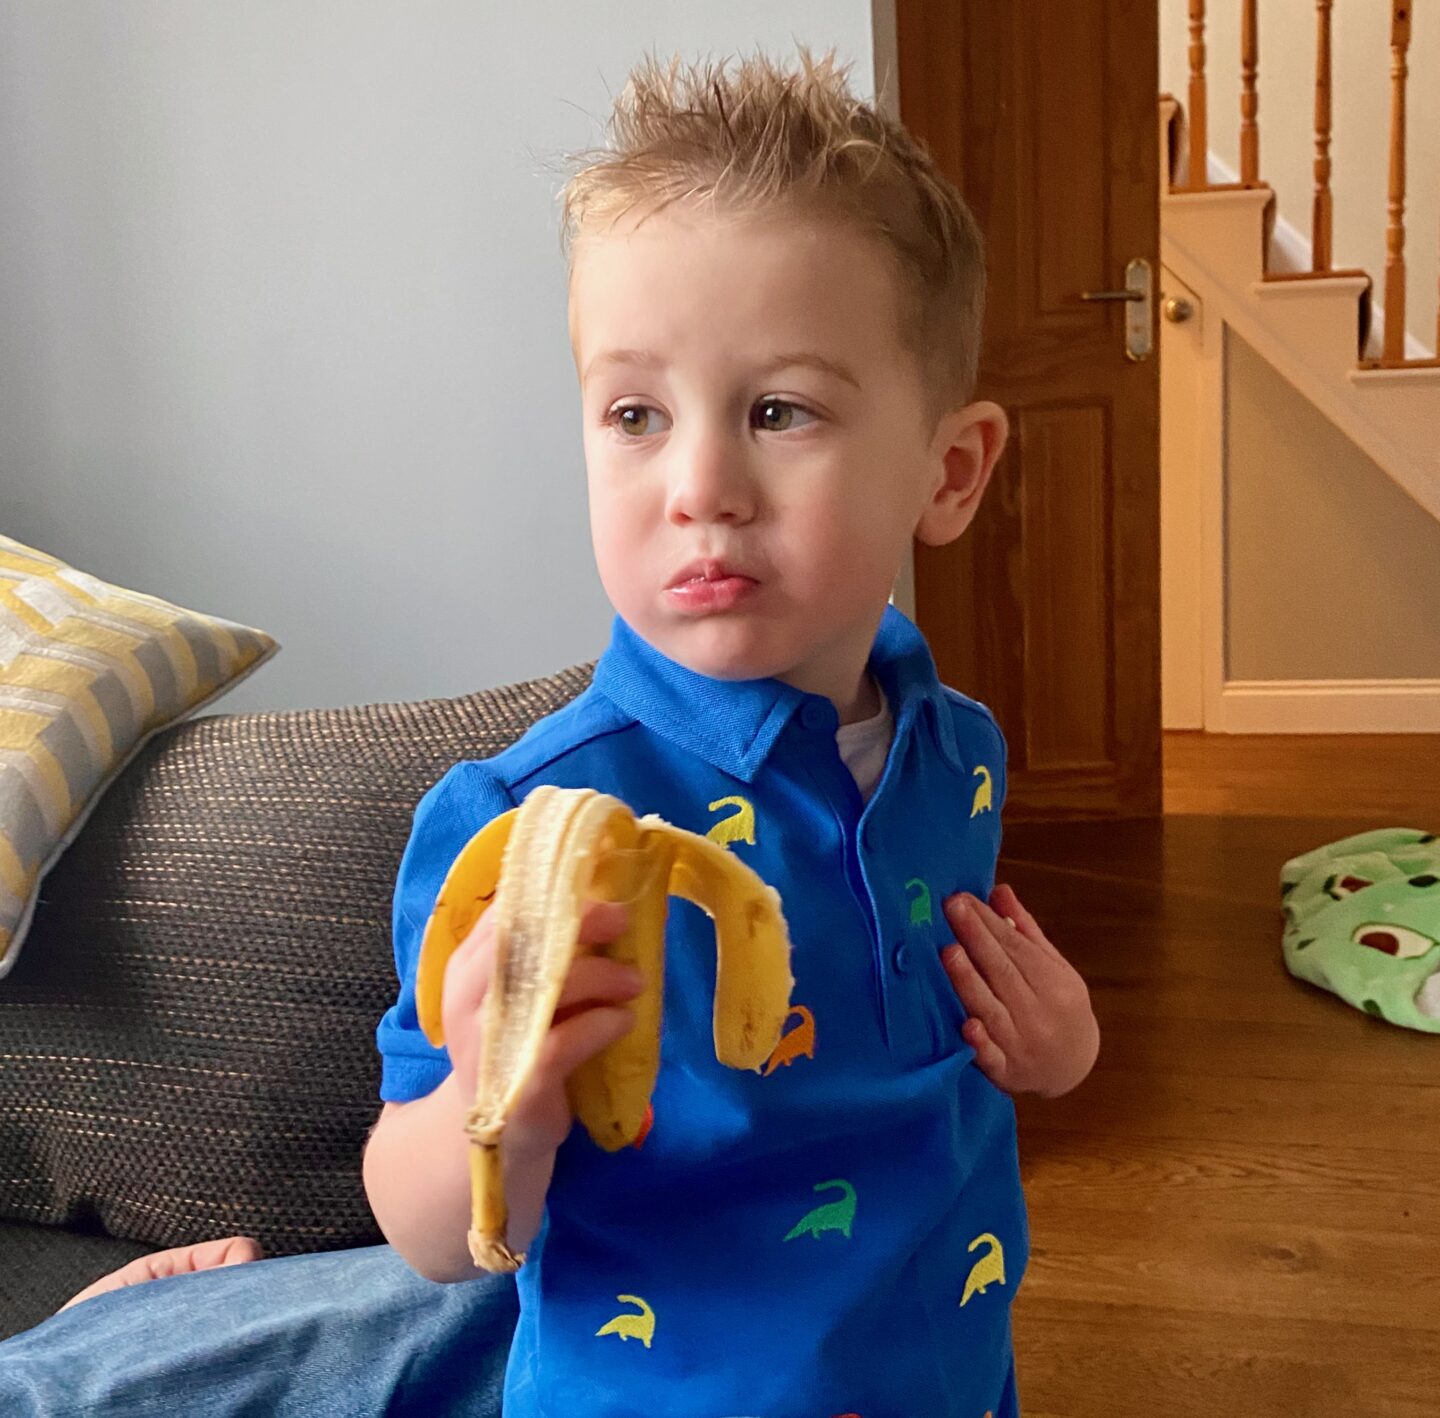 little blonde boy eating a banana